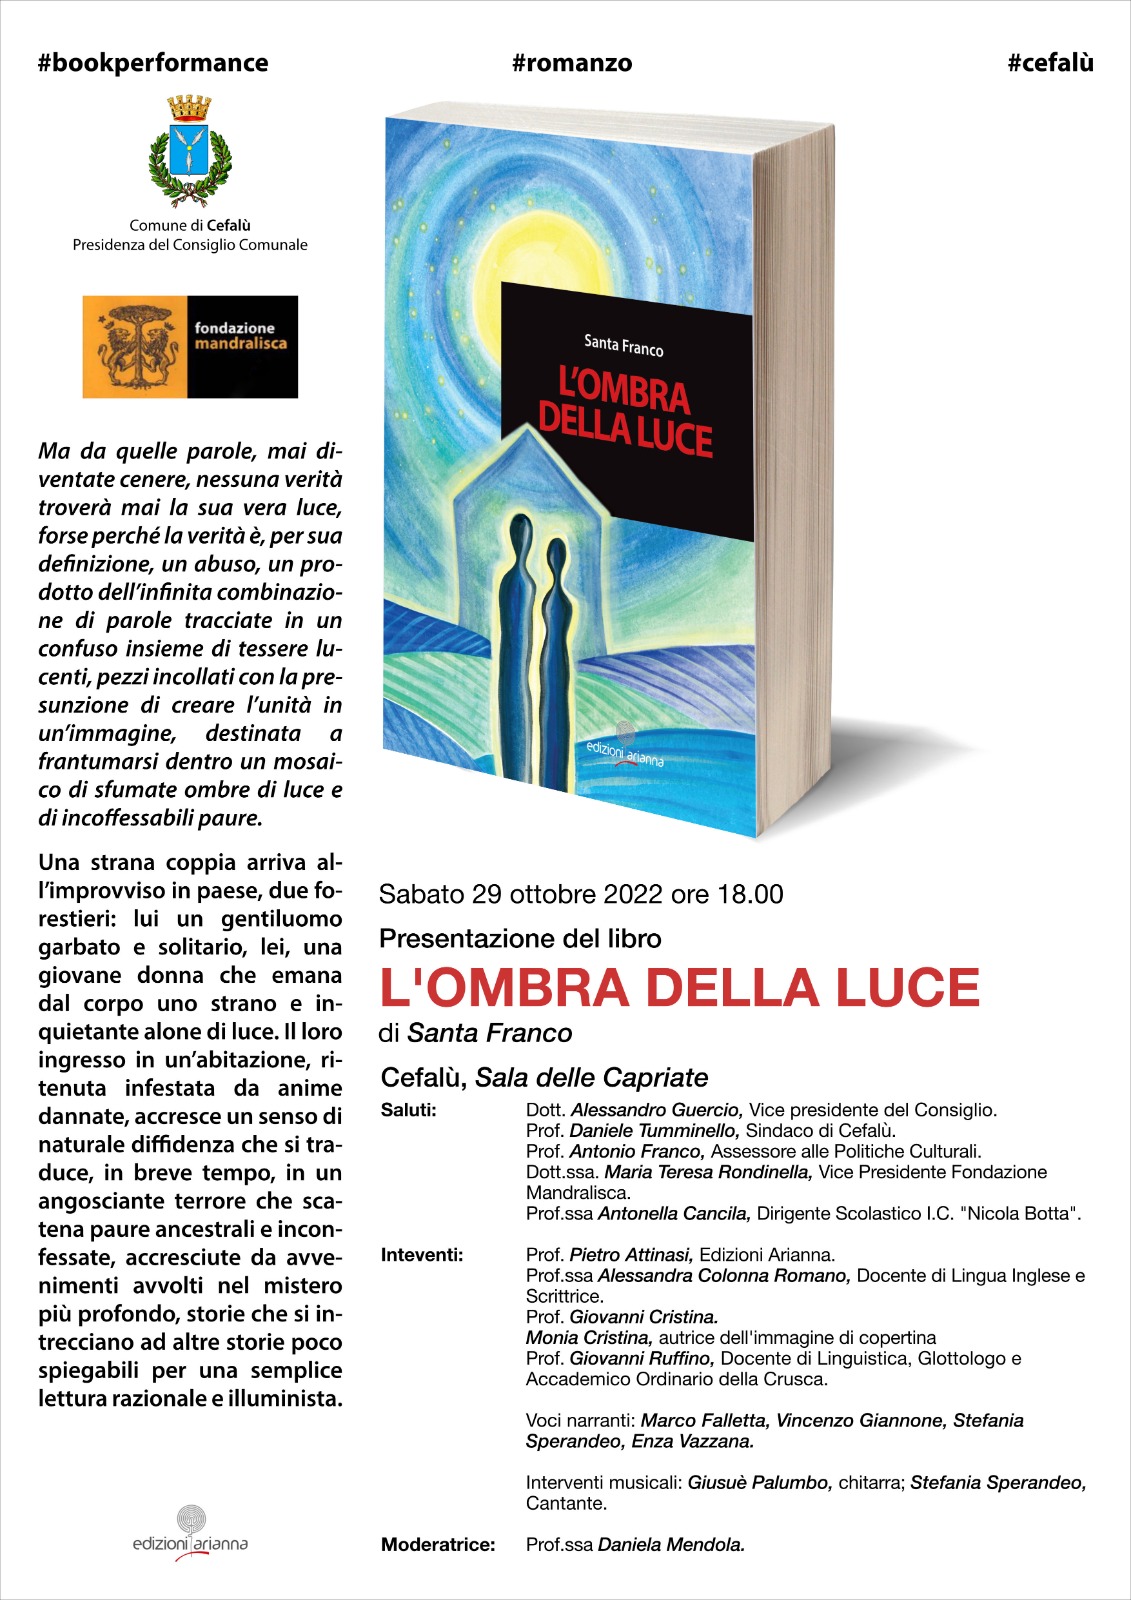 Santa Franco a Cefalù. Book Performance L'Ombra della luce – Edizioni  Arianna